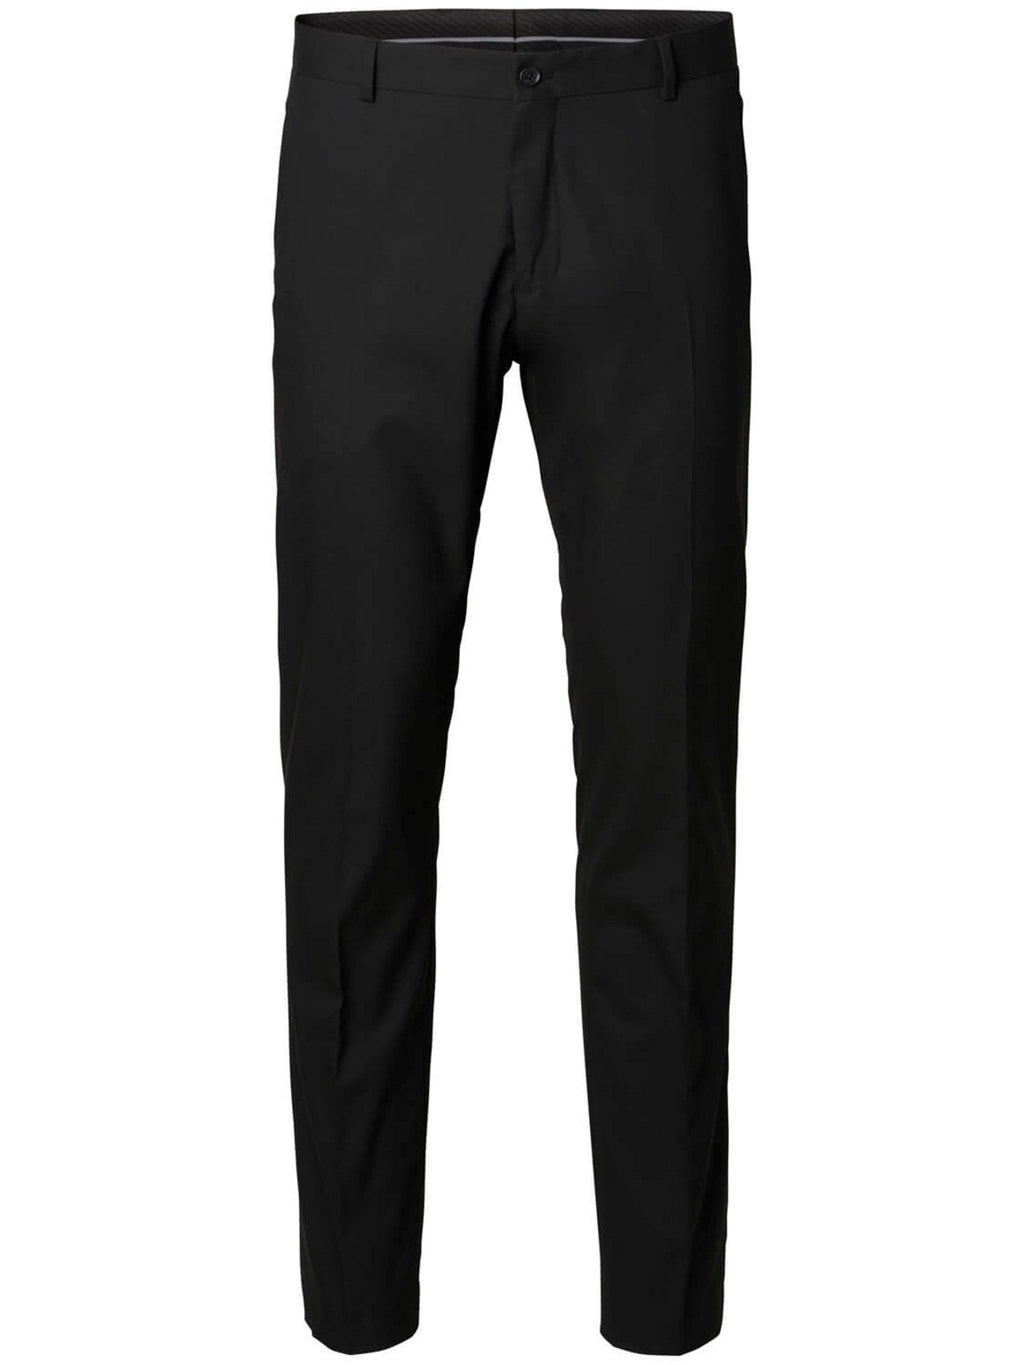 Slim fit suit pants - Black